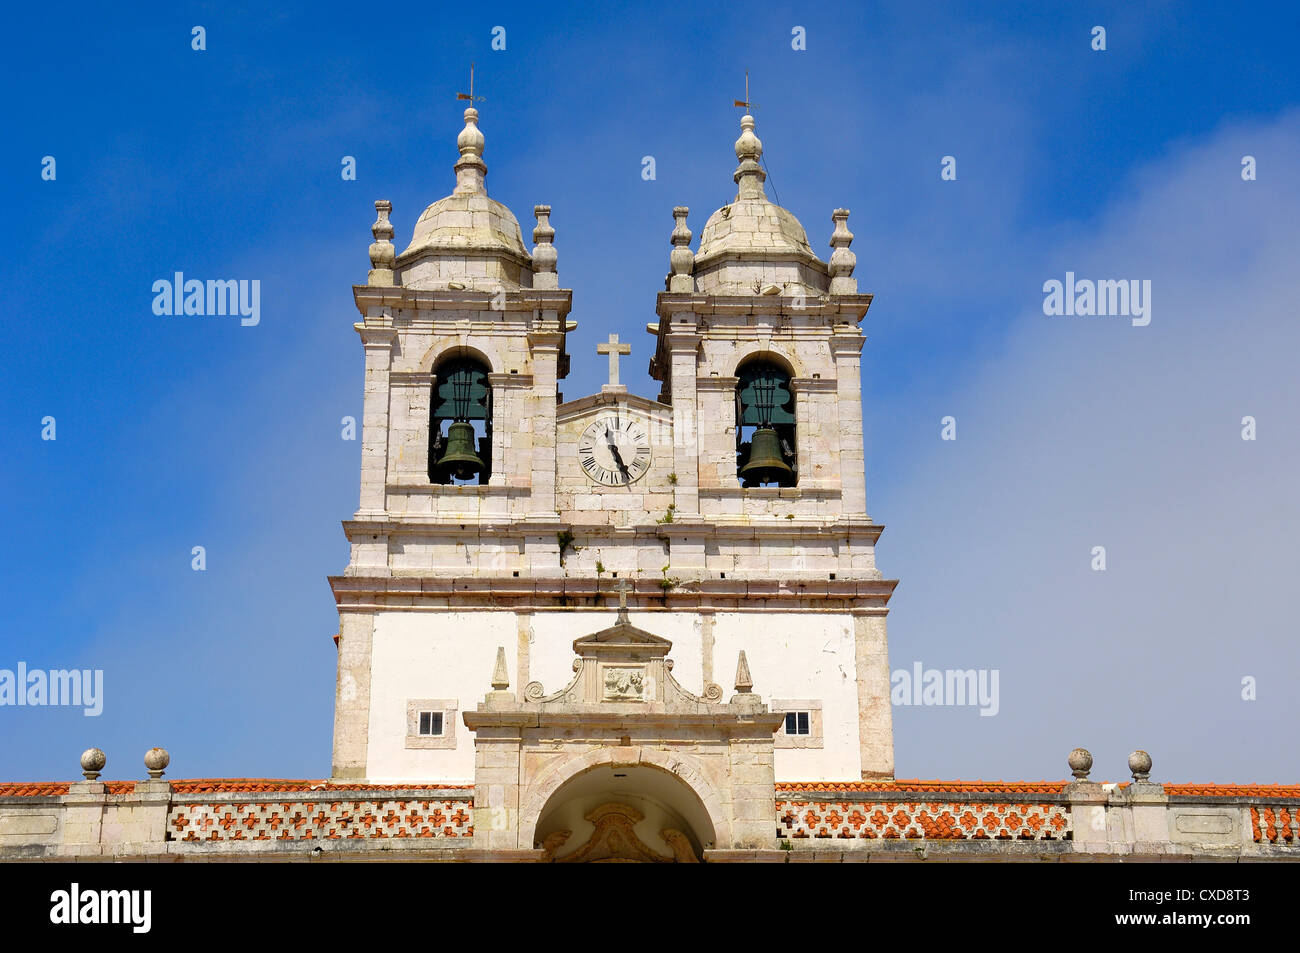 Nazare, Nossa Senhora da Nazare Chiesa di Nostra Signora di Nazare chiesa, Sitio, Leiria distric. Estremadura. Portogallo Foto Stock